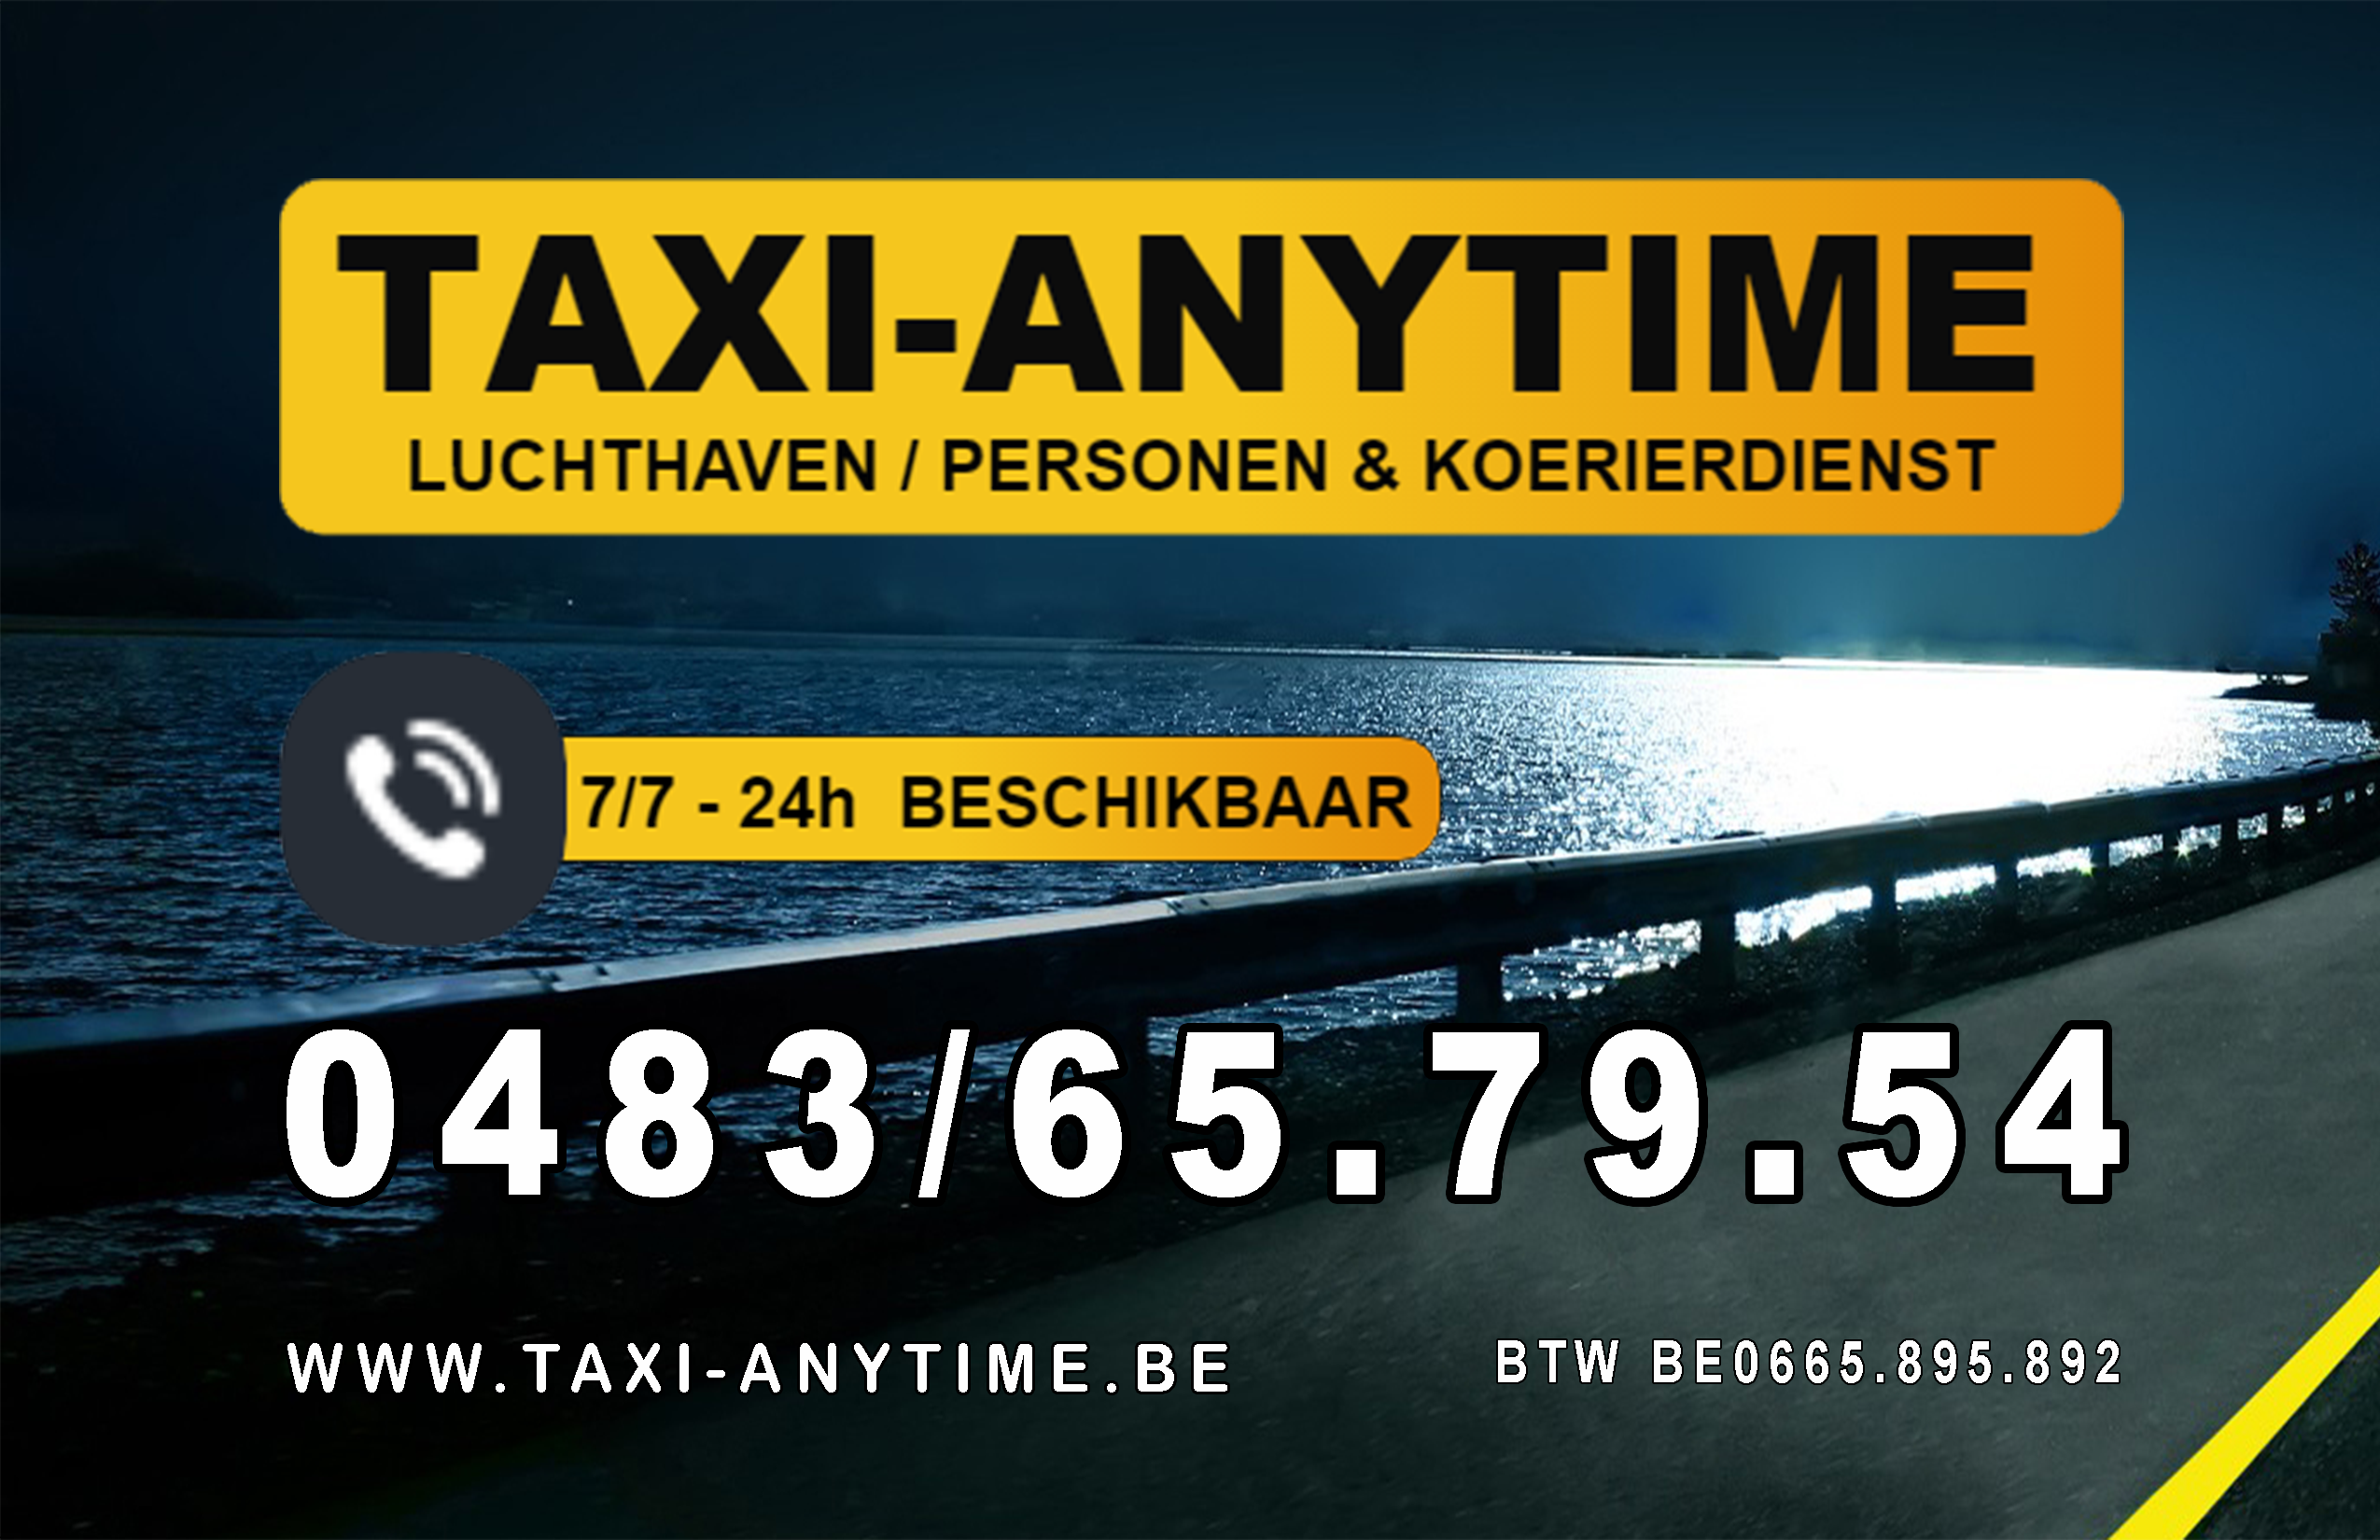 taxibedrijven met luchthavenvervoer Blankenberge Taxi-anytime